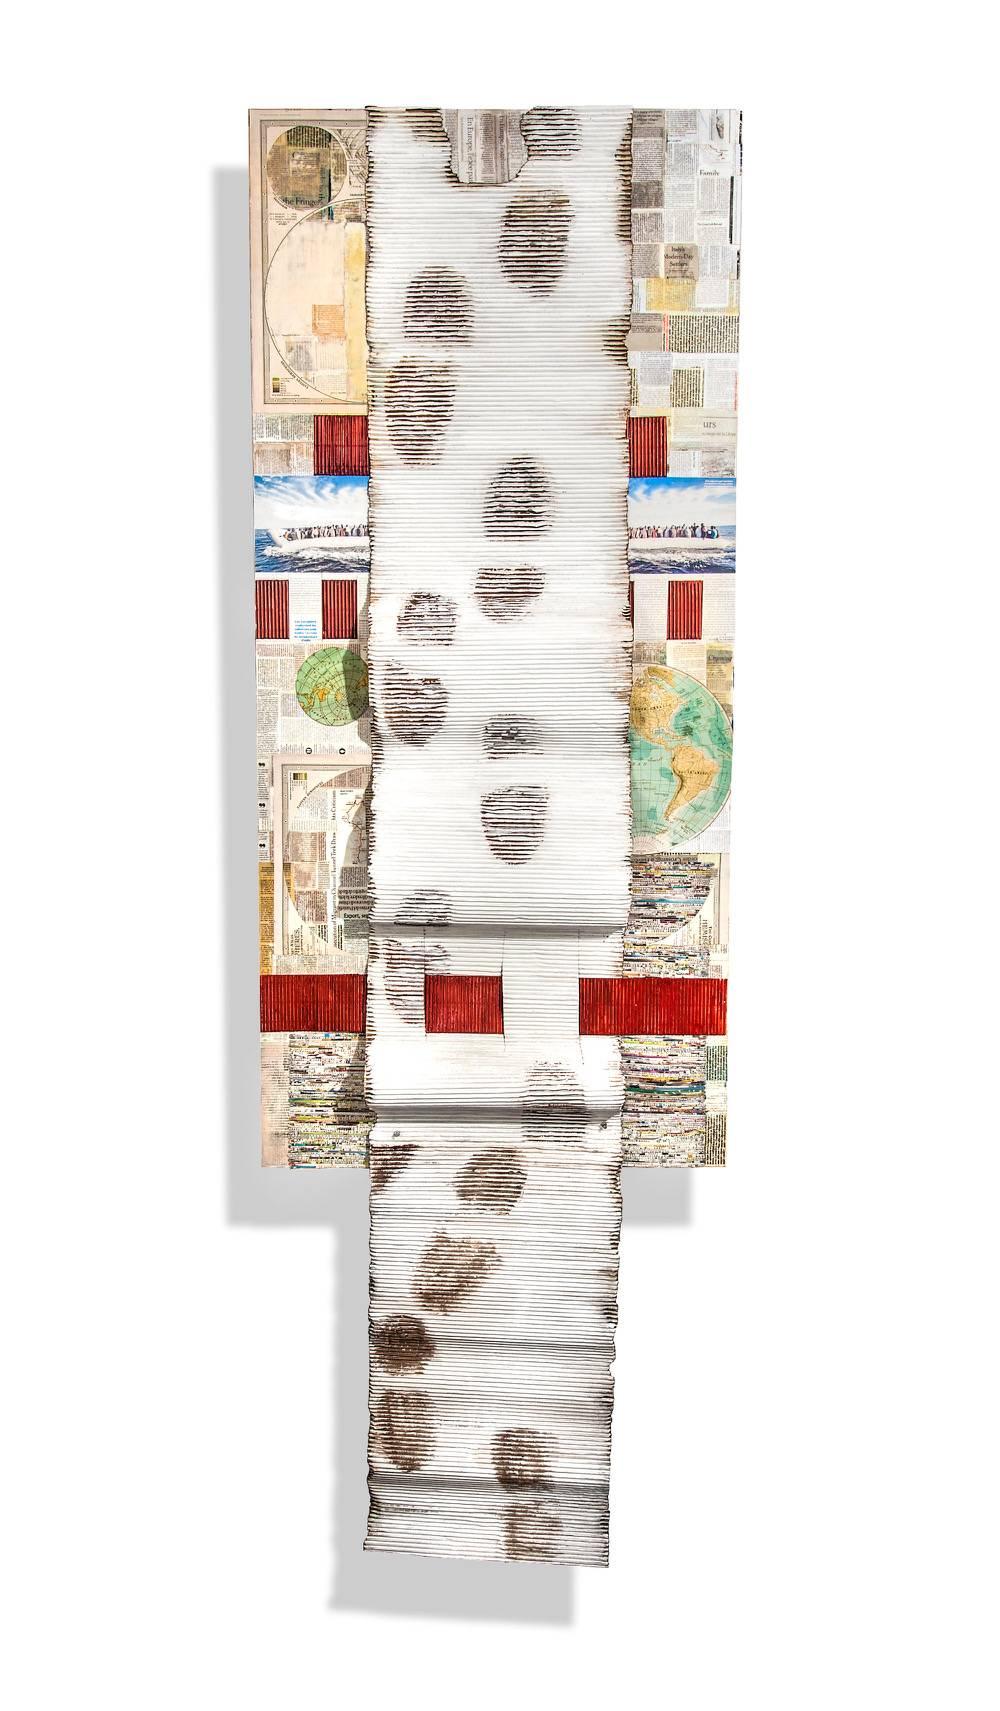 "Exode" par Joan Giordano
Médias mixtes, papier abaca fait à la main, journaux, tirages photographiques, encaustique

L'artiste Joan Giordano, exposée et collectionnée dans les musées, est connue pour ses sculptures en papier et ses reliefs muraux